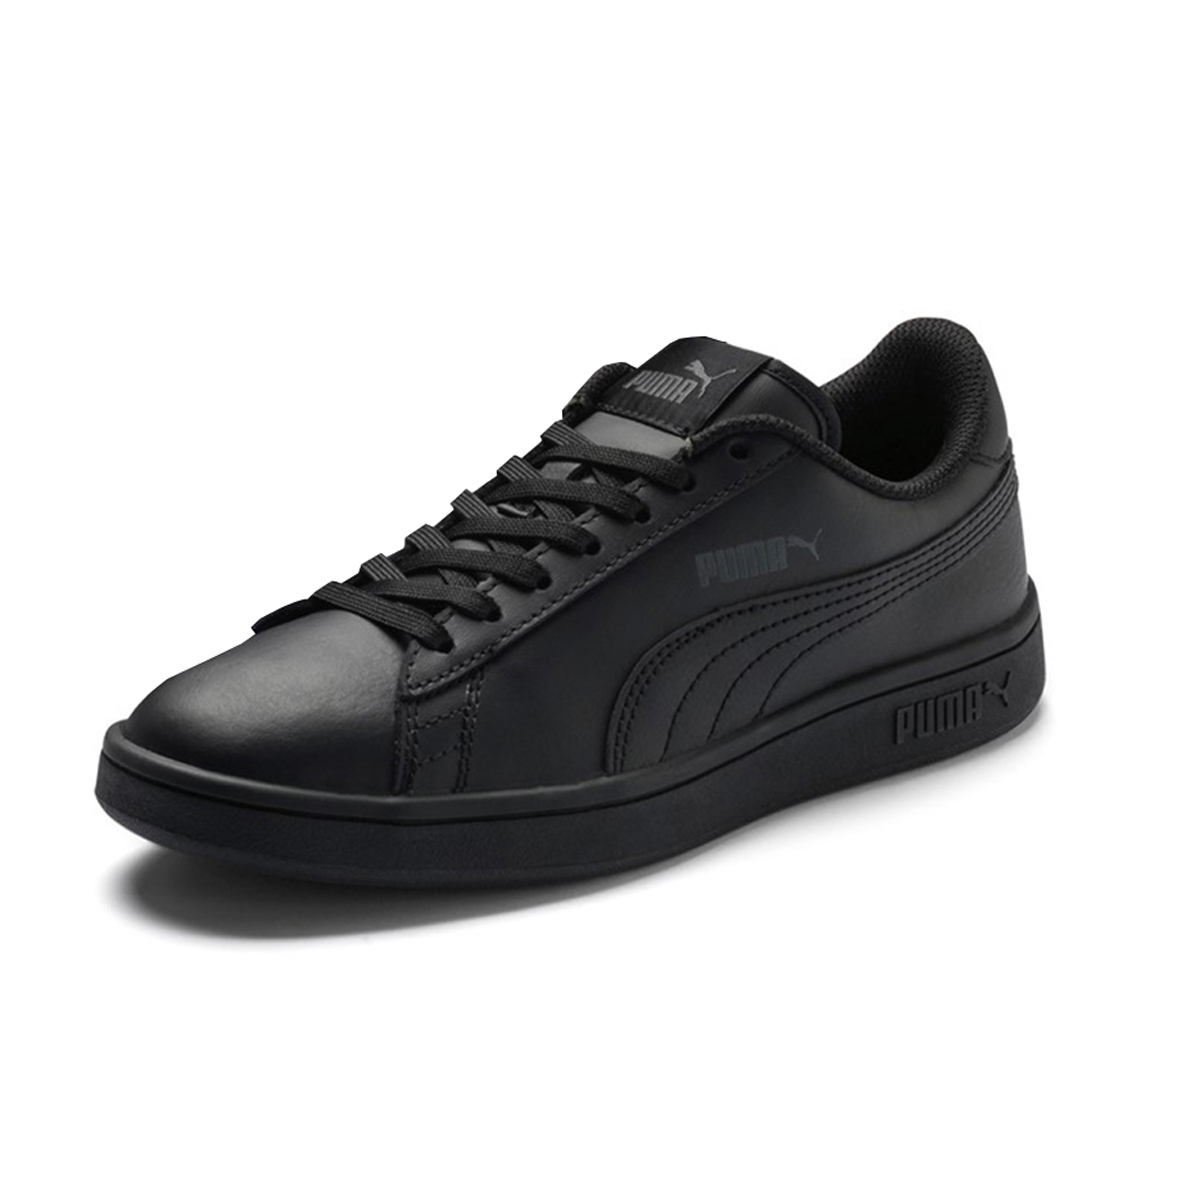 Puma Smash v2 L JR Junior Kinder Sneaker Schuhe Leder schwarz 365170 01